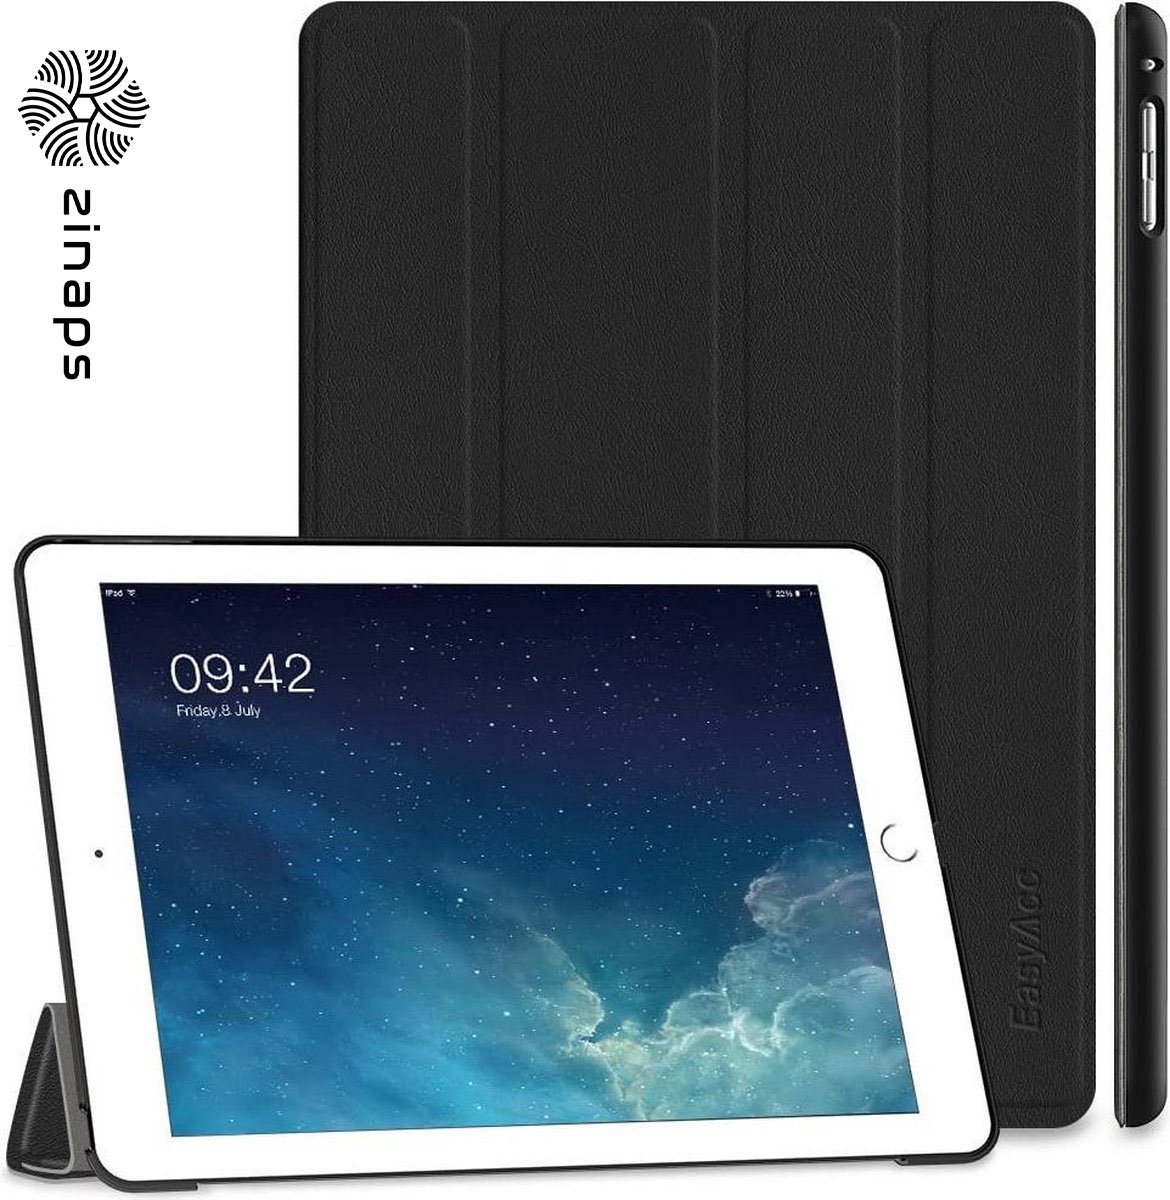 ipad lucht 2 deksel - ZINAPS Ultra Slim iPad Air 2 Smart Case Cover met standaard / Auto Sleep Wake-up voor Apple iPad Air 2 / iPad 6 (Top Premium PU leder, gevouwen Cover Design, Zwart)